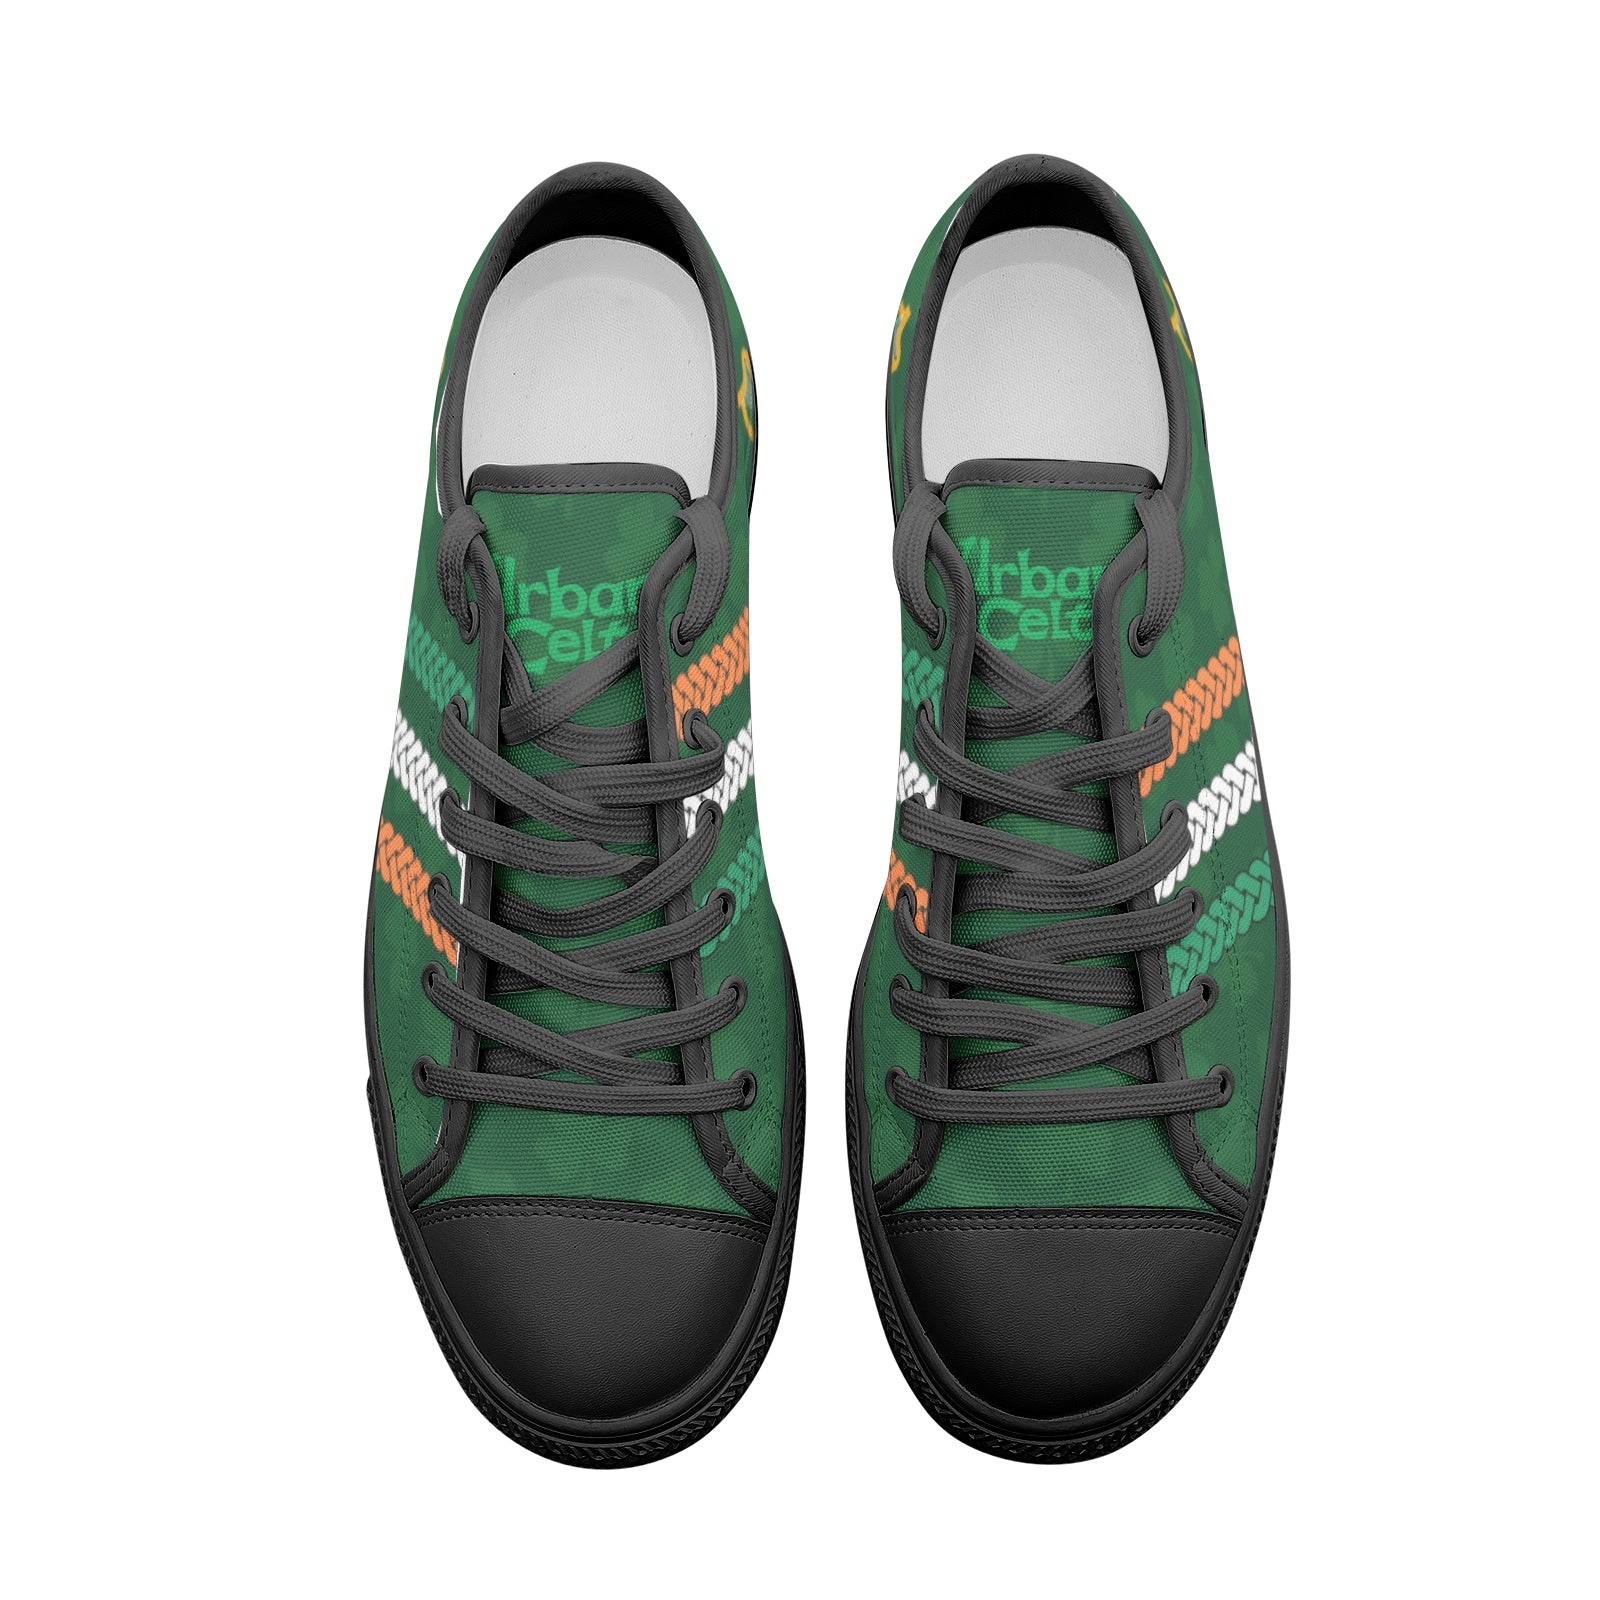 Celtic Storm Canvas Sneakers – Urban Celt